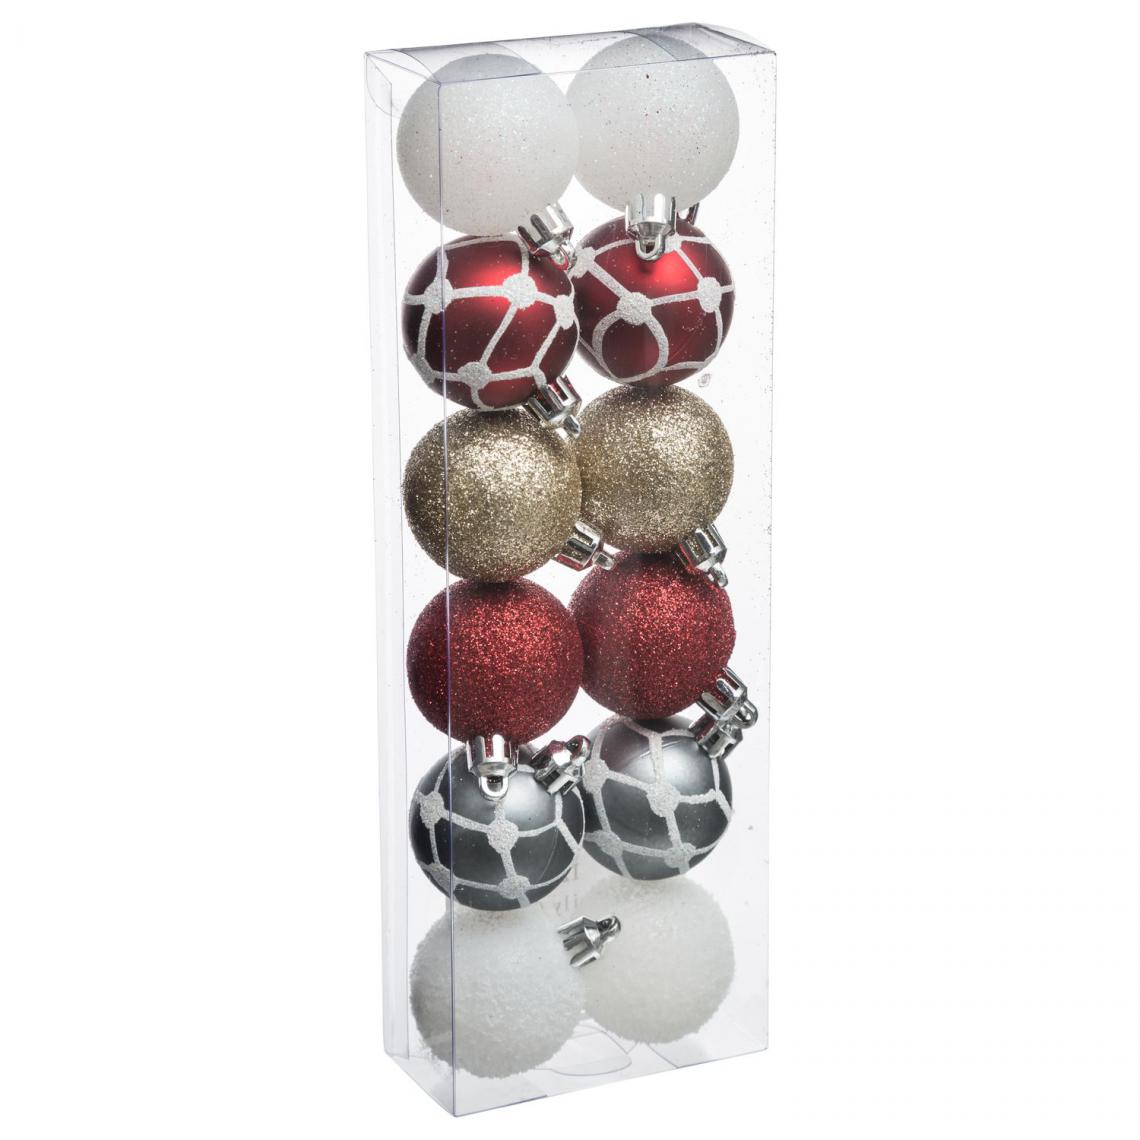 JJA - Kit de décorations pour sapin de noël - 12 Pièces - Rouge, blanc et argent - Décorations de Noël